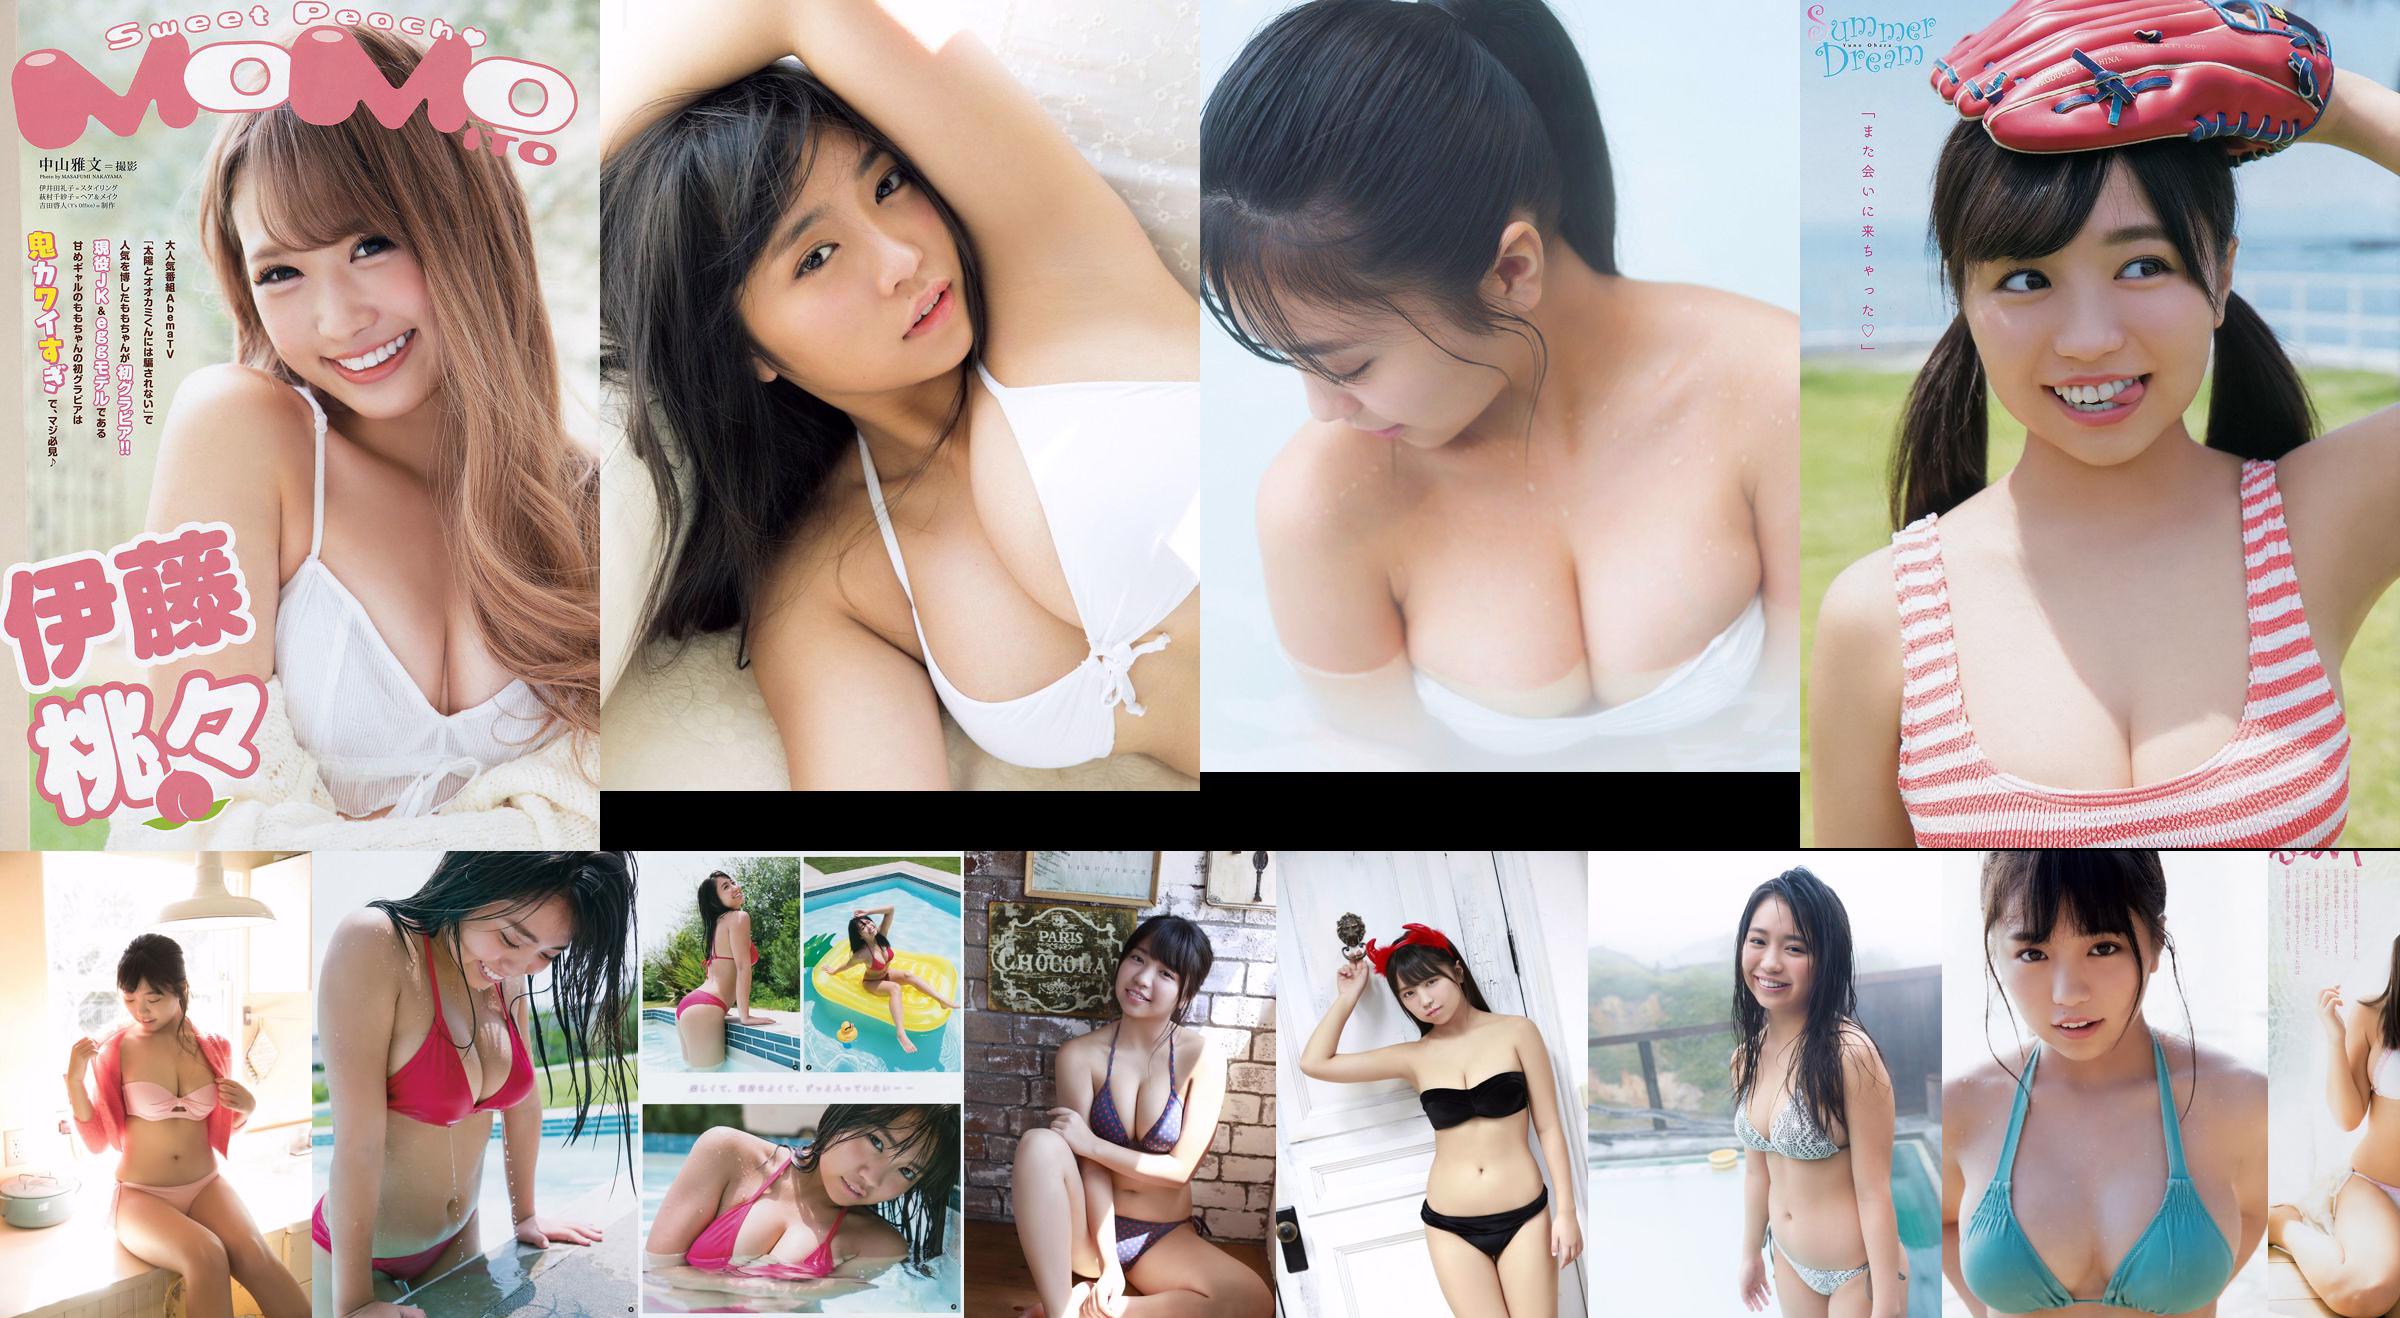 [Young Gangan] Yuno Ohara Erika Suzuki Mine Sakitsuki 2018 No.17 Foto Mori No.e67c8c Página 2